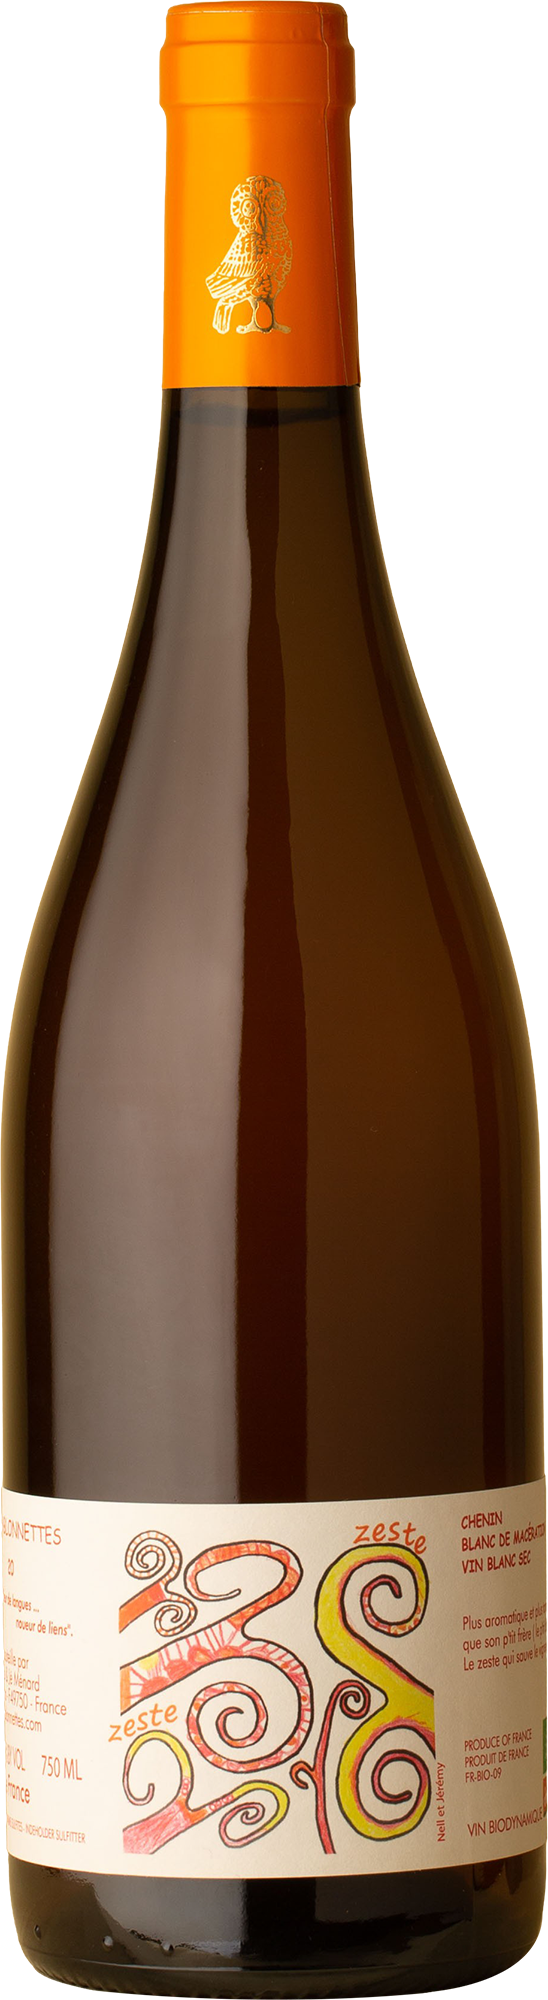 Domaine des Sablonnettes - Zeste Skin Contact Chenin Blanc 2020 Orange Wine